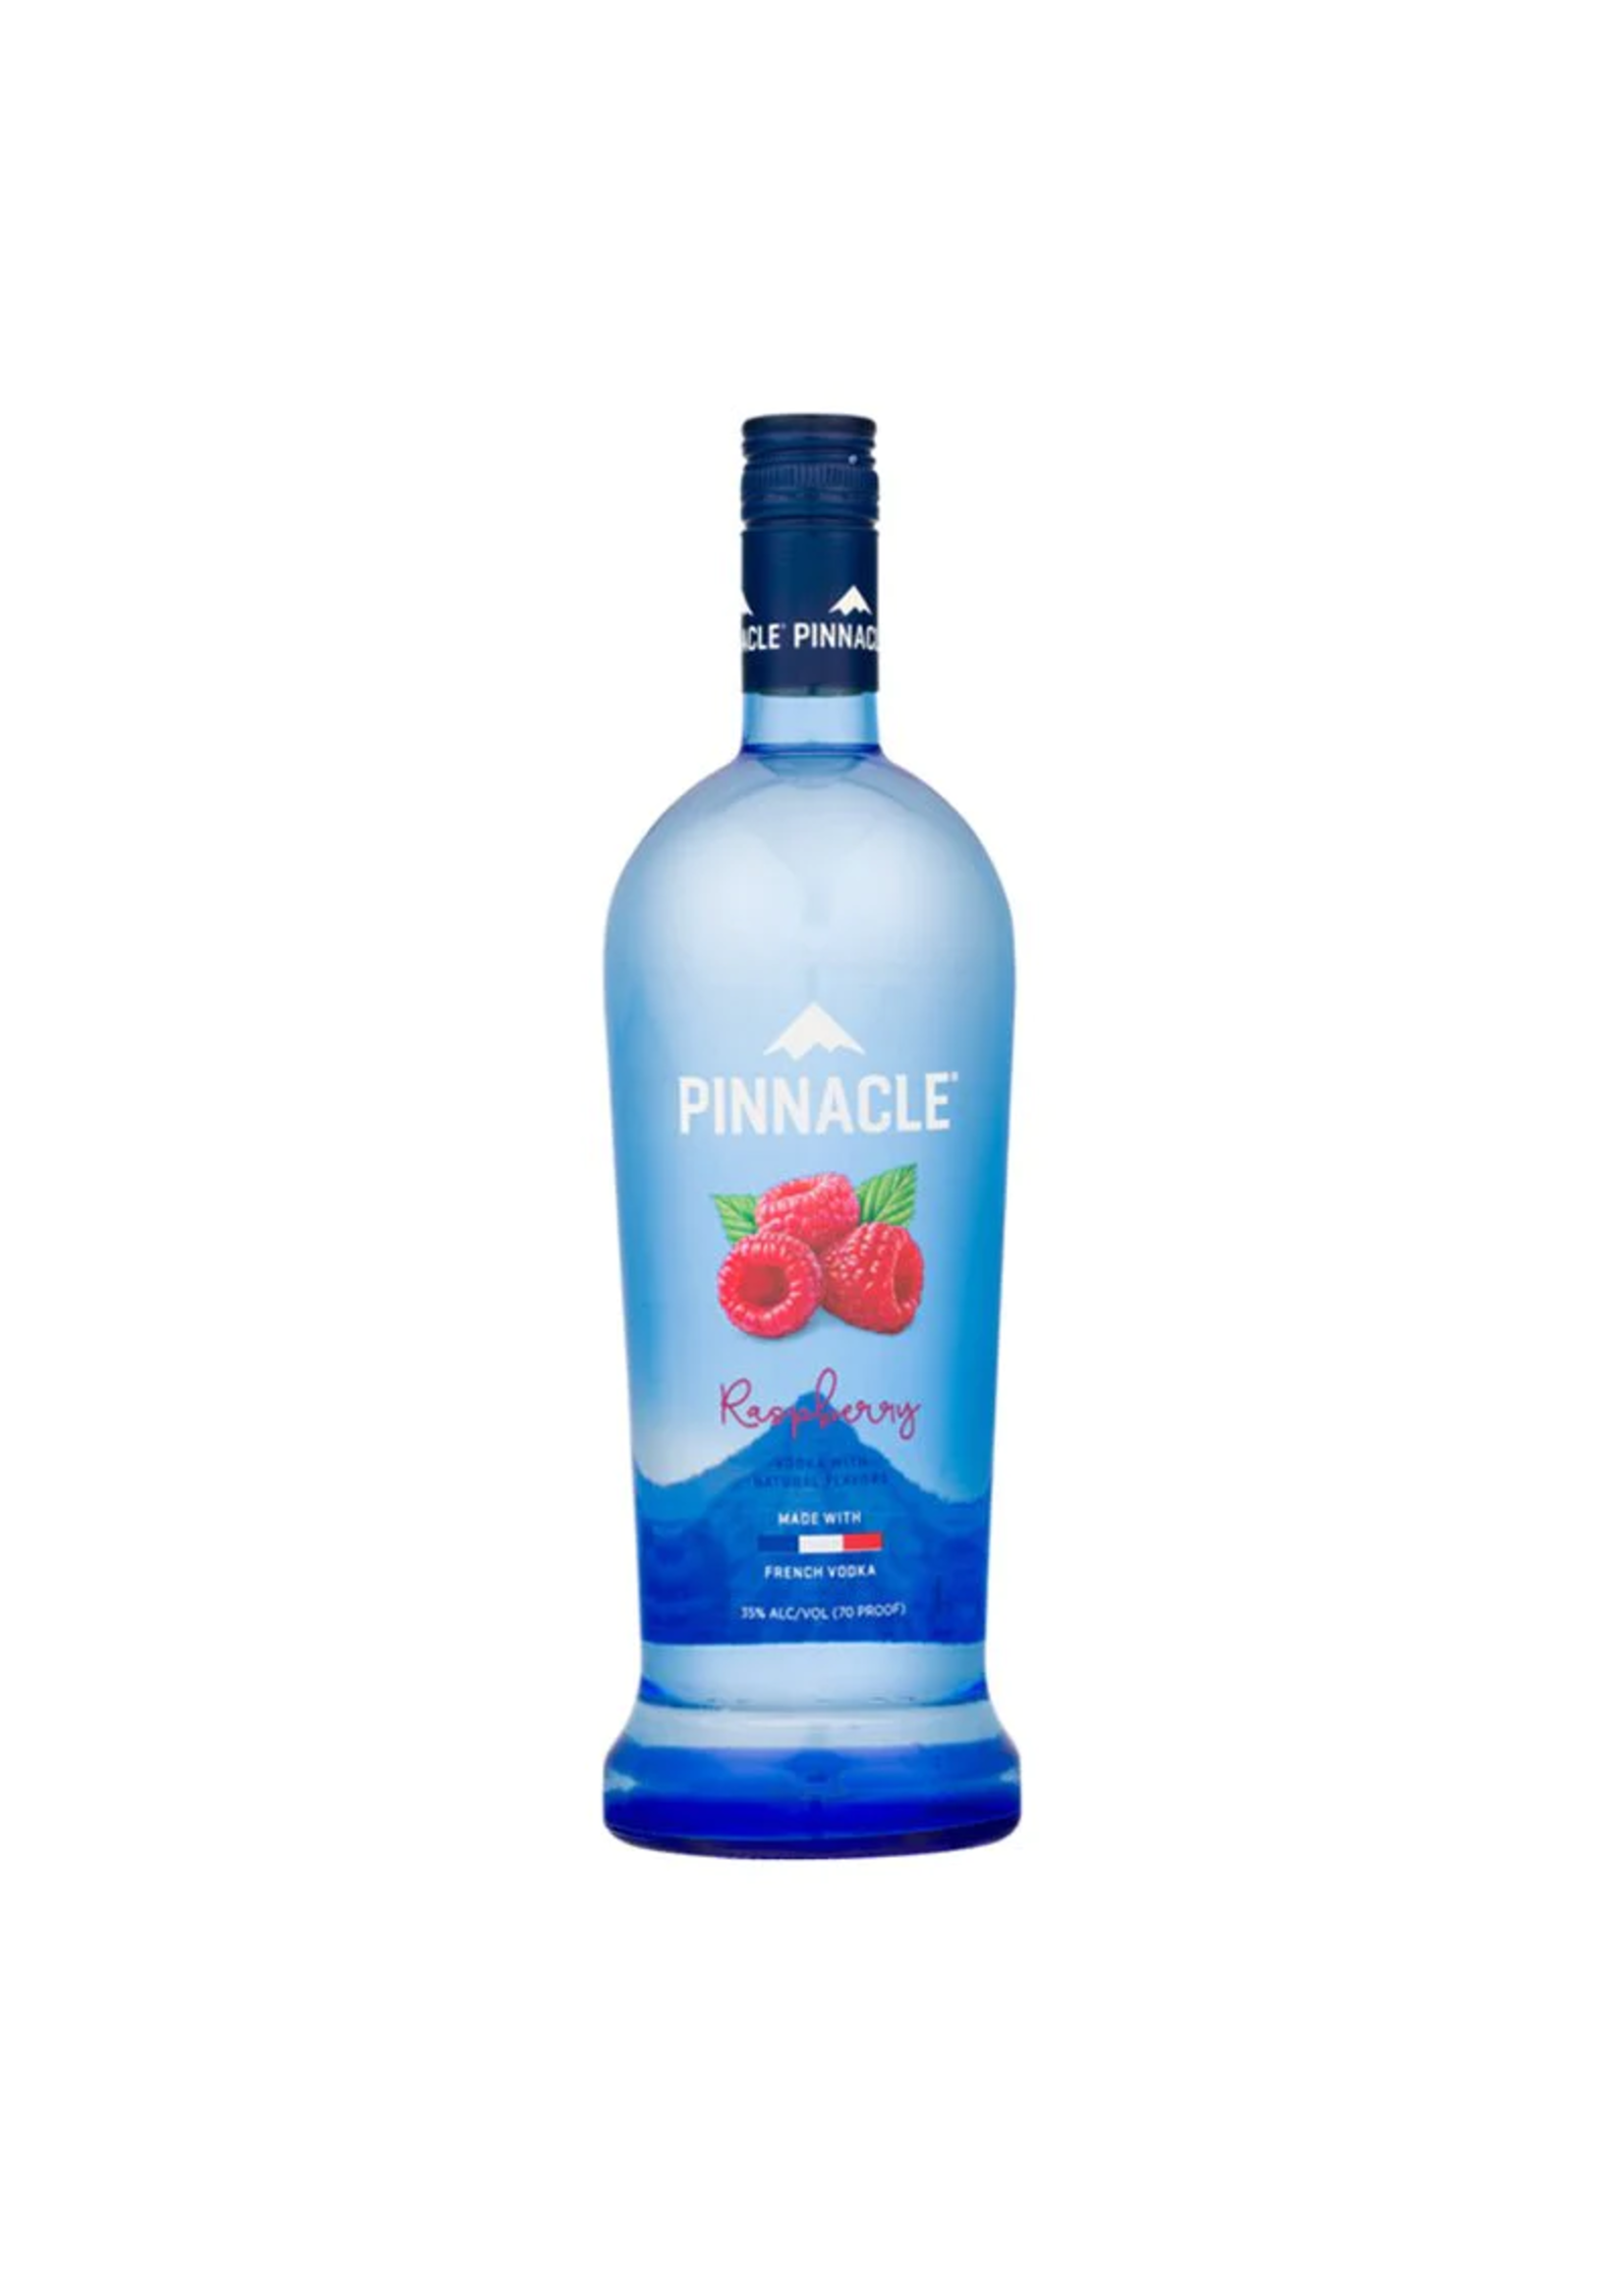 Pinnacle Pinnacle Raspberry Flavored Vodka 60Proof 1 Ltr